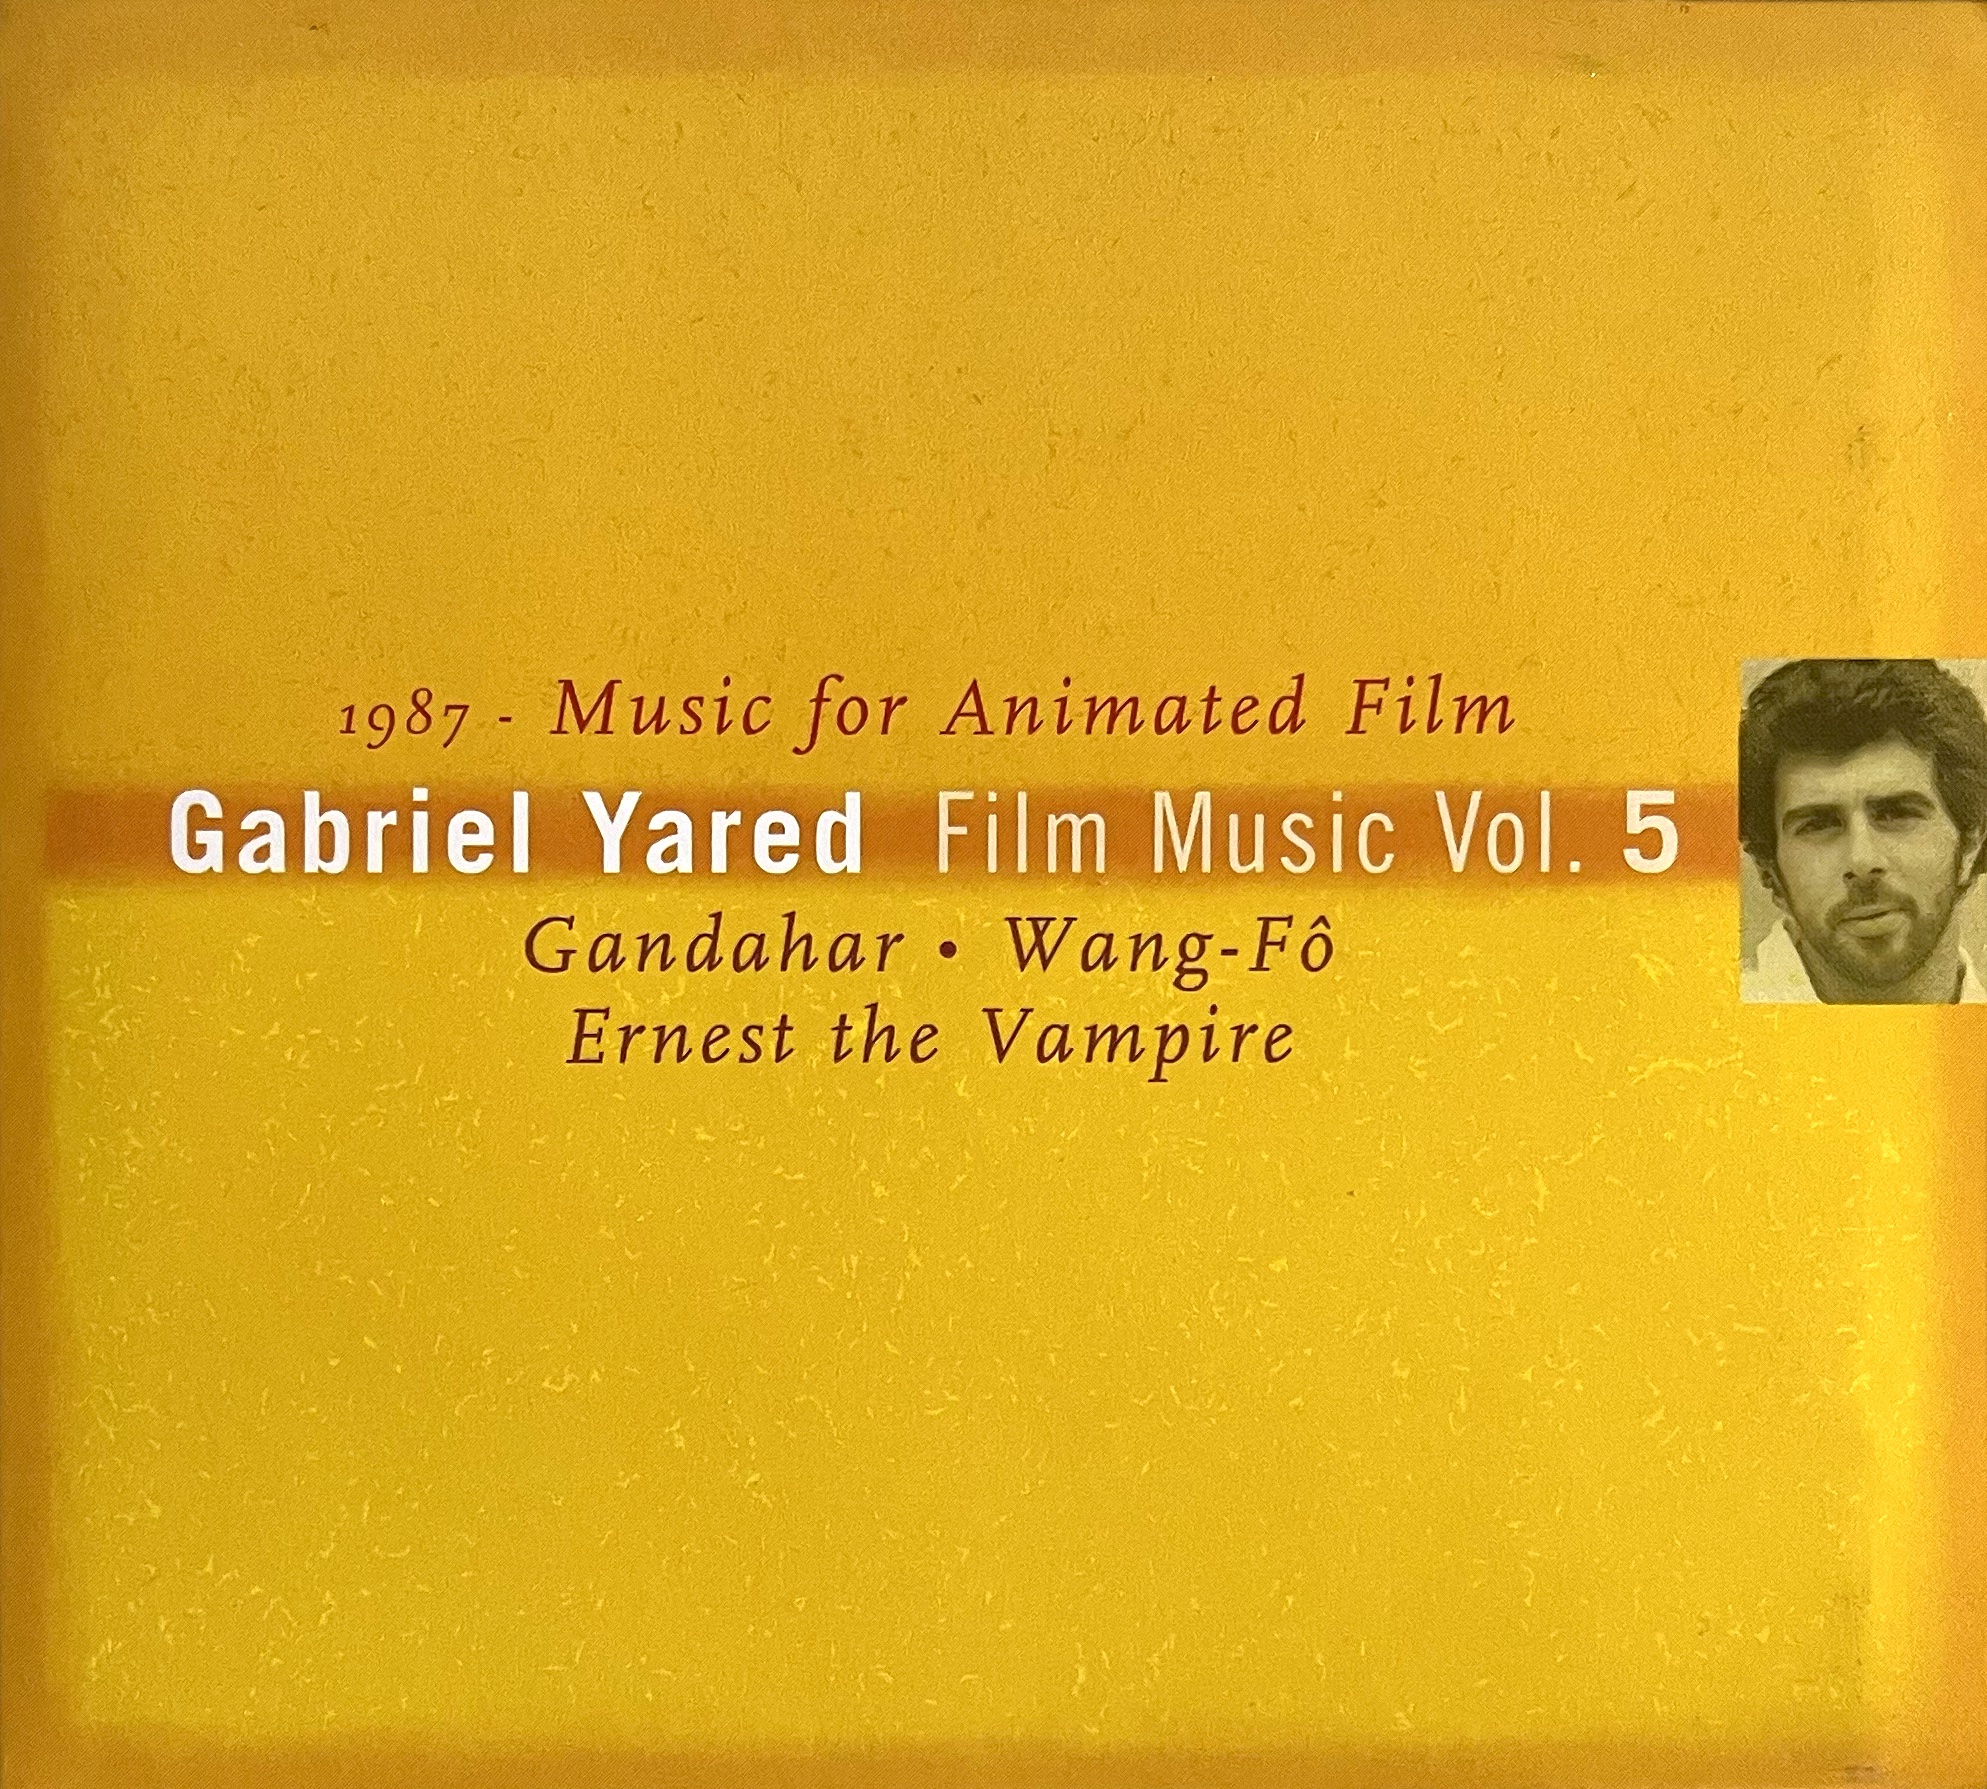 Gabriel Yared Film Music Vol. 5